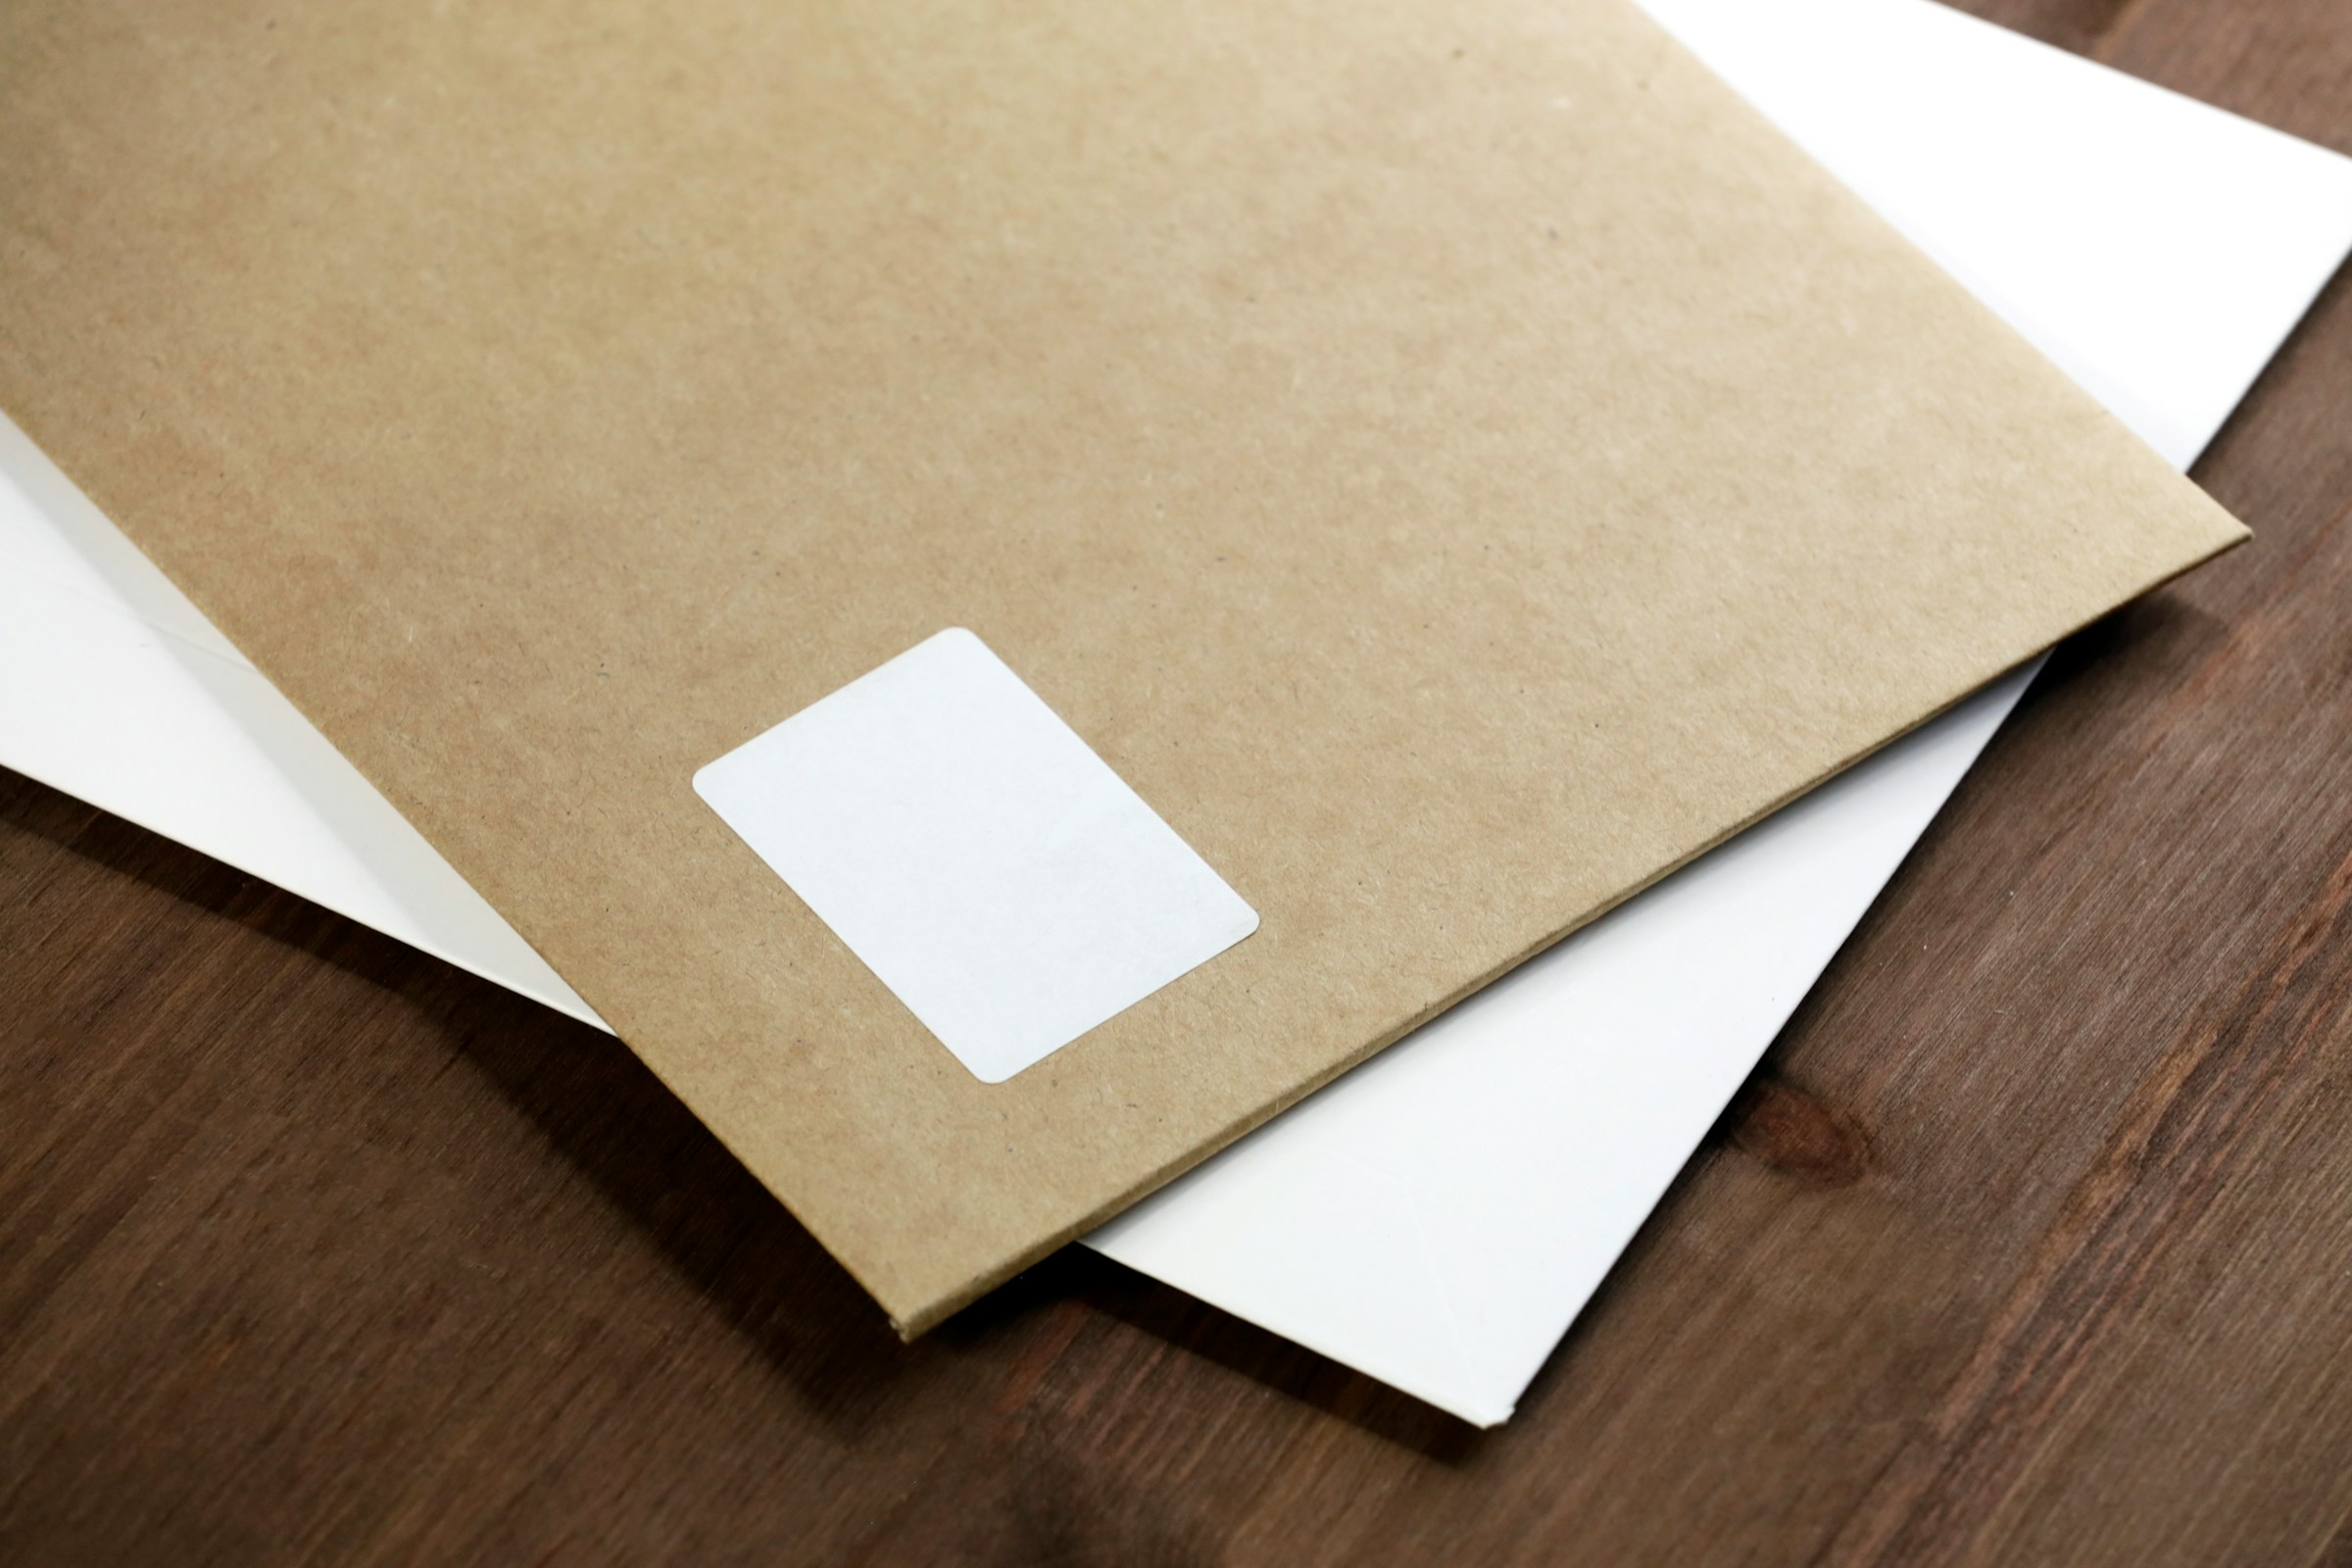 Deux enveloppes sur une table | Source : Unsplash